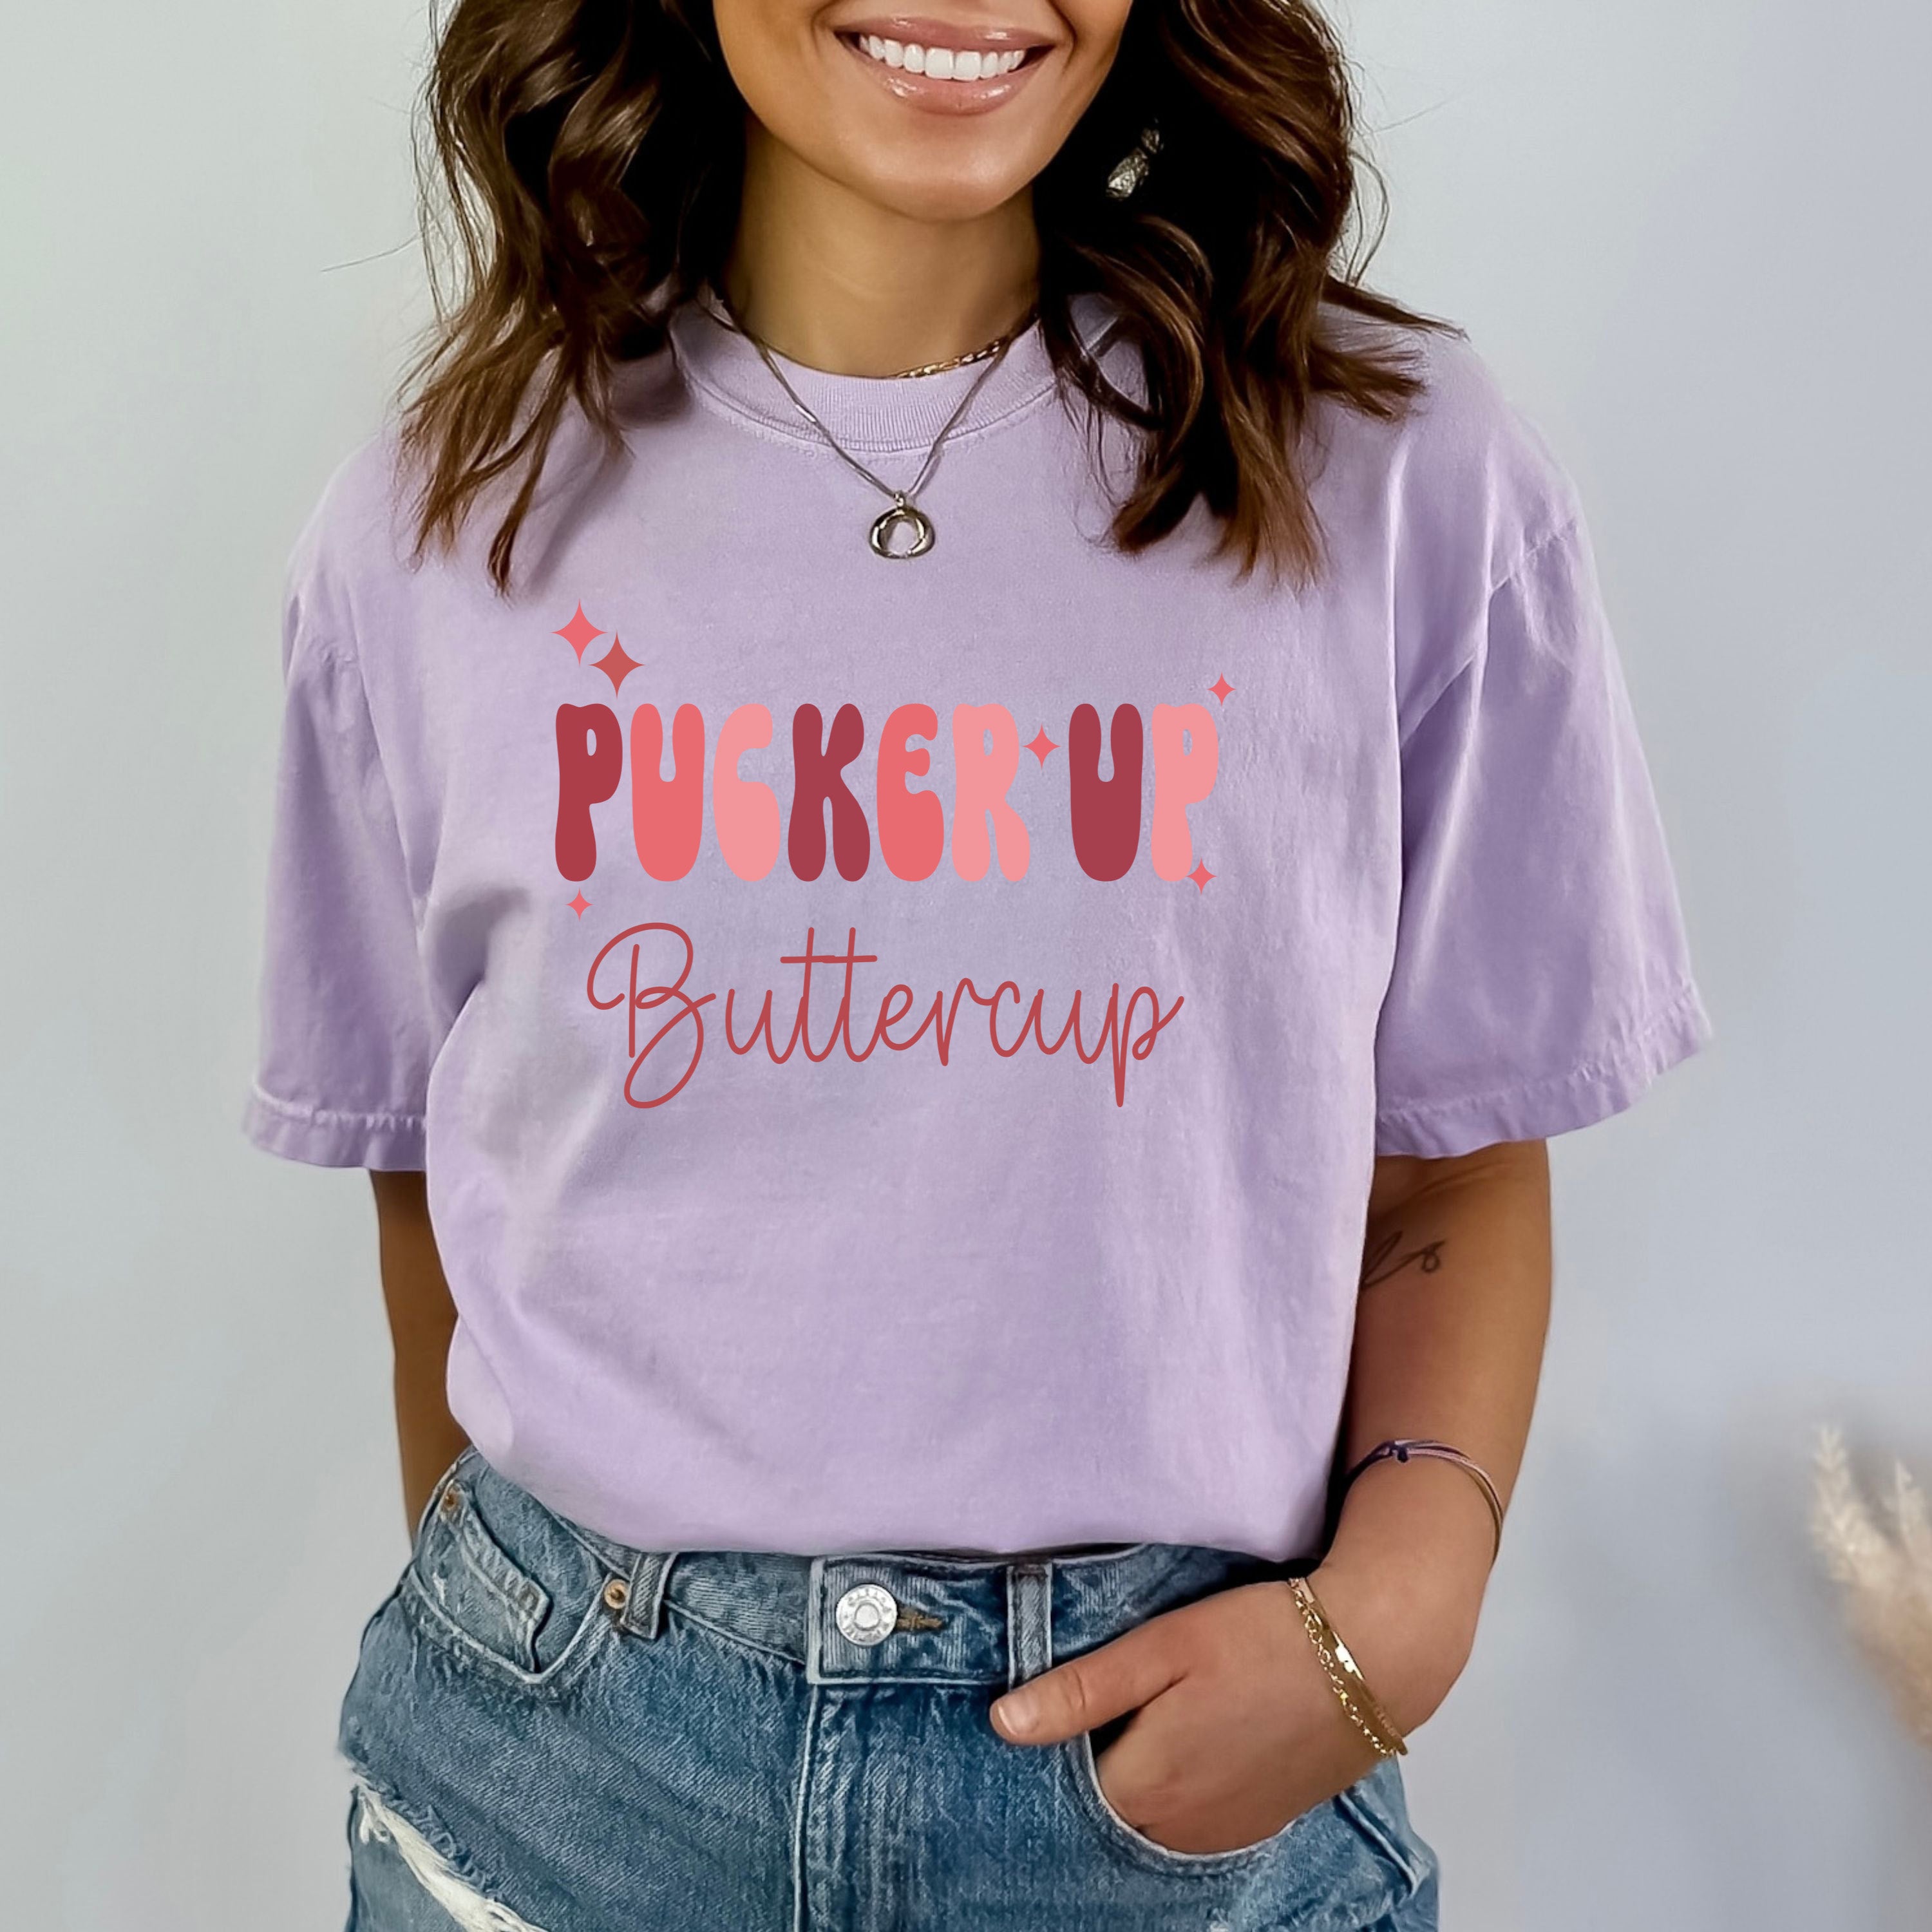 Pucker Up Buttercup - Bella canvas